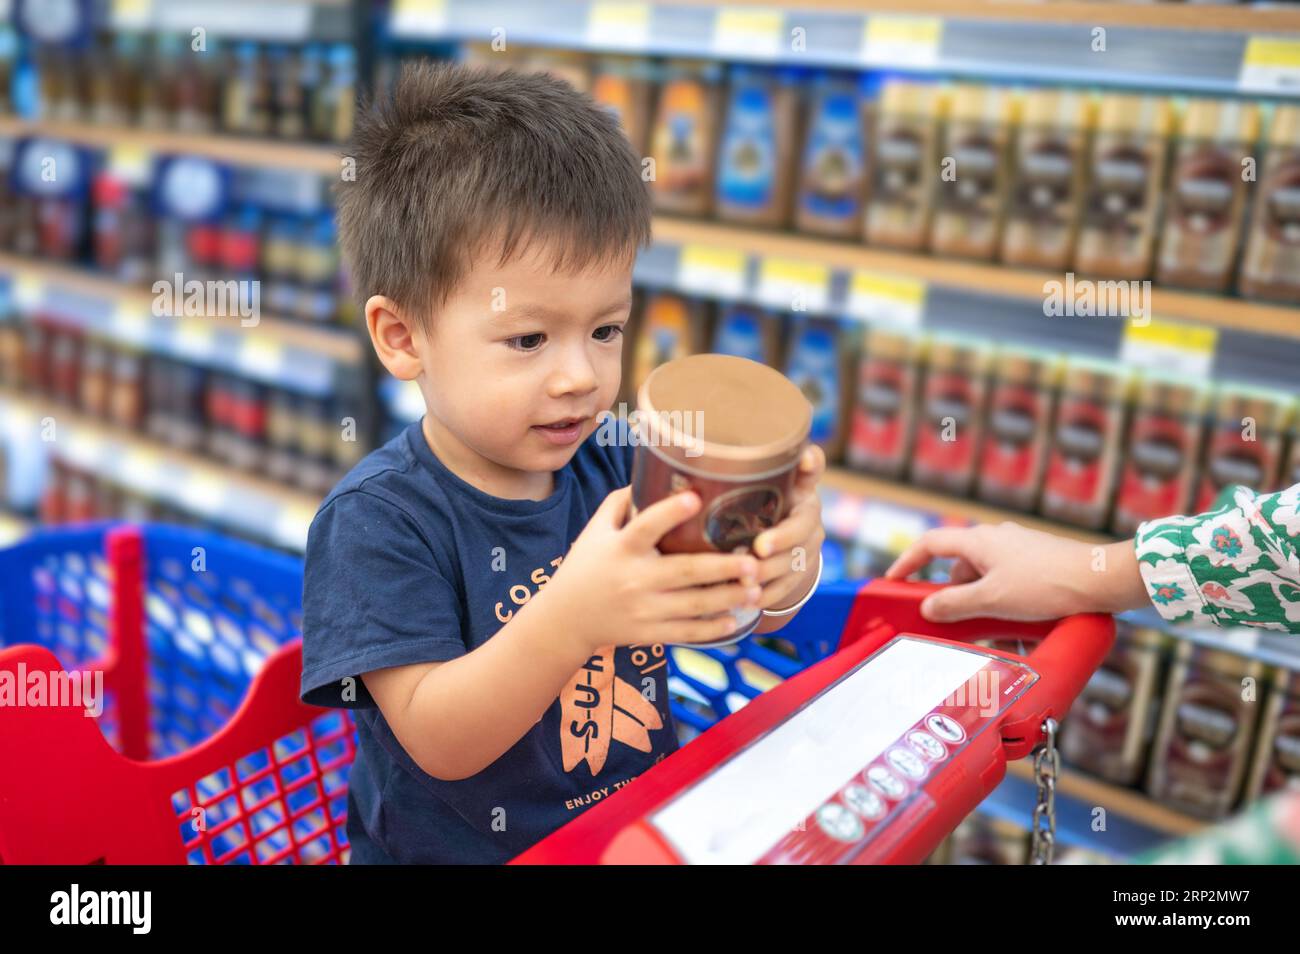 Adorabile bimbo multirazziale di due anni con una t-shirt blu seduto in un carrello della spesa con generi alimentari, che tiene in mano una tazza di plastica con le mani piccole, in g Foto Stock